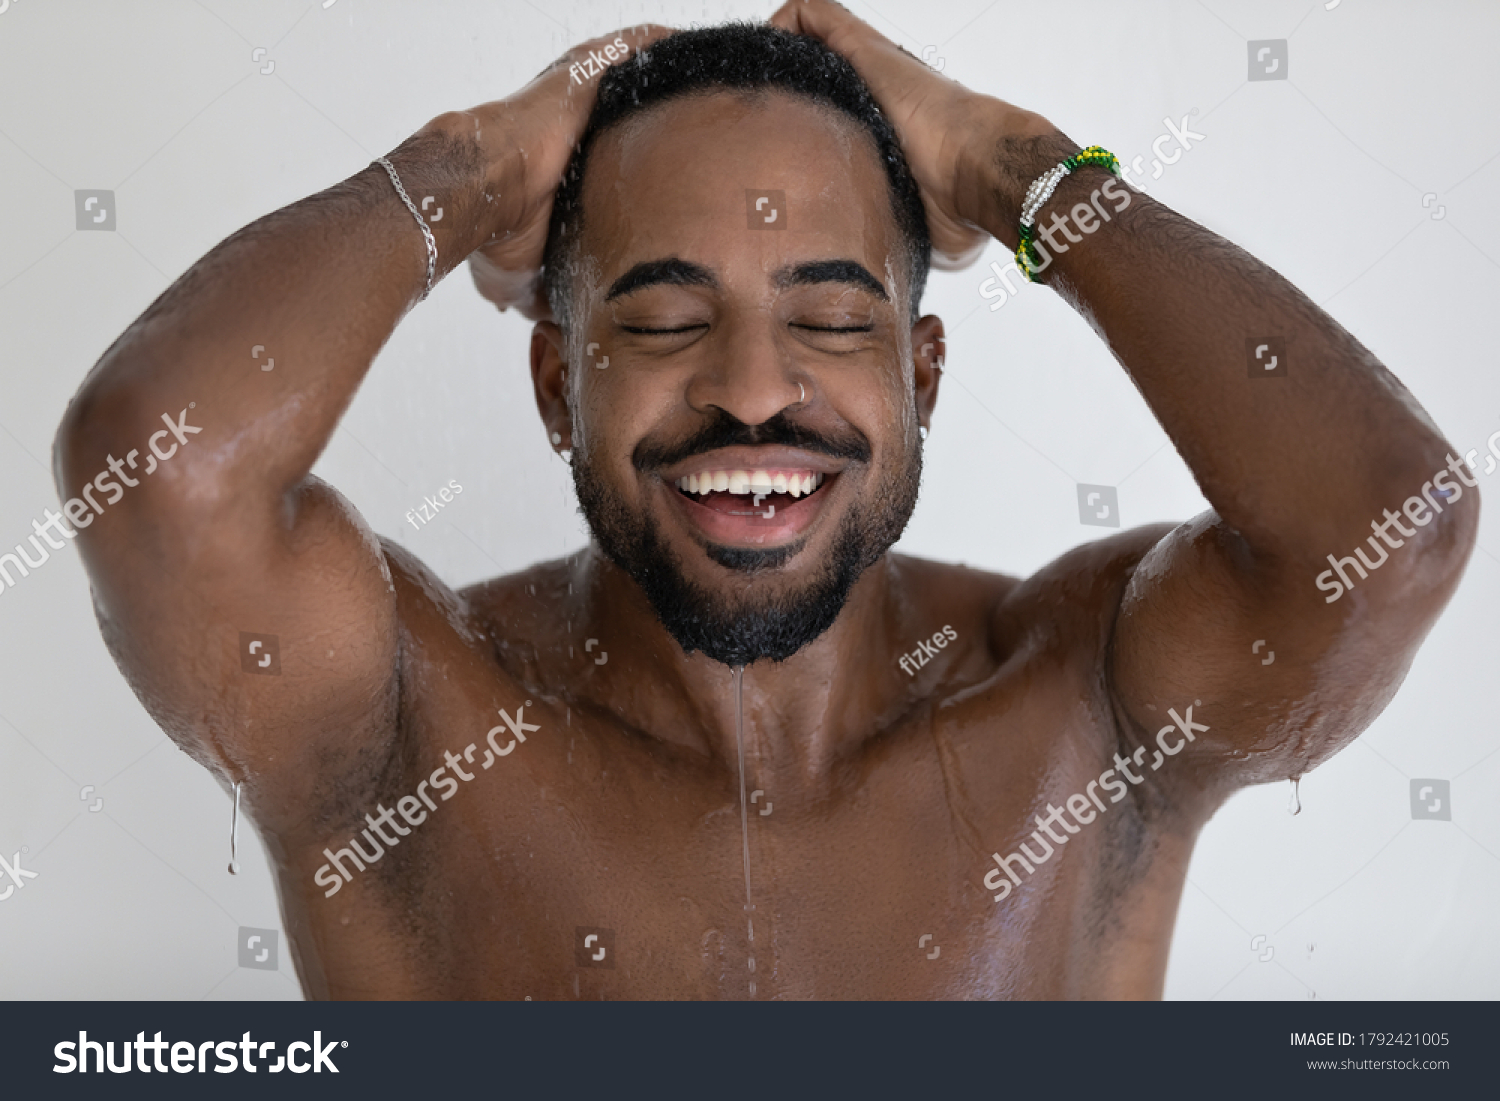 10 475件の「naked Man Shower」の画像、写真素材、ベクター画像 Shutterstock